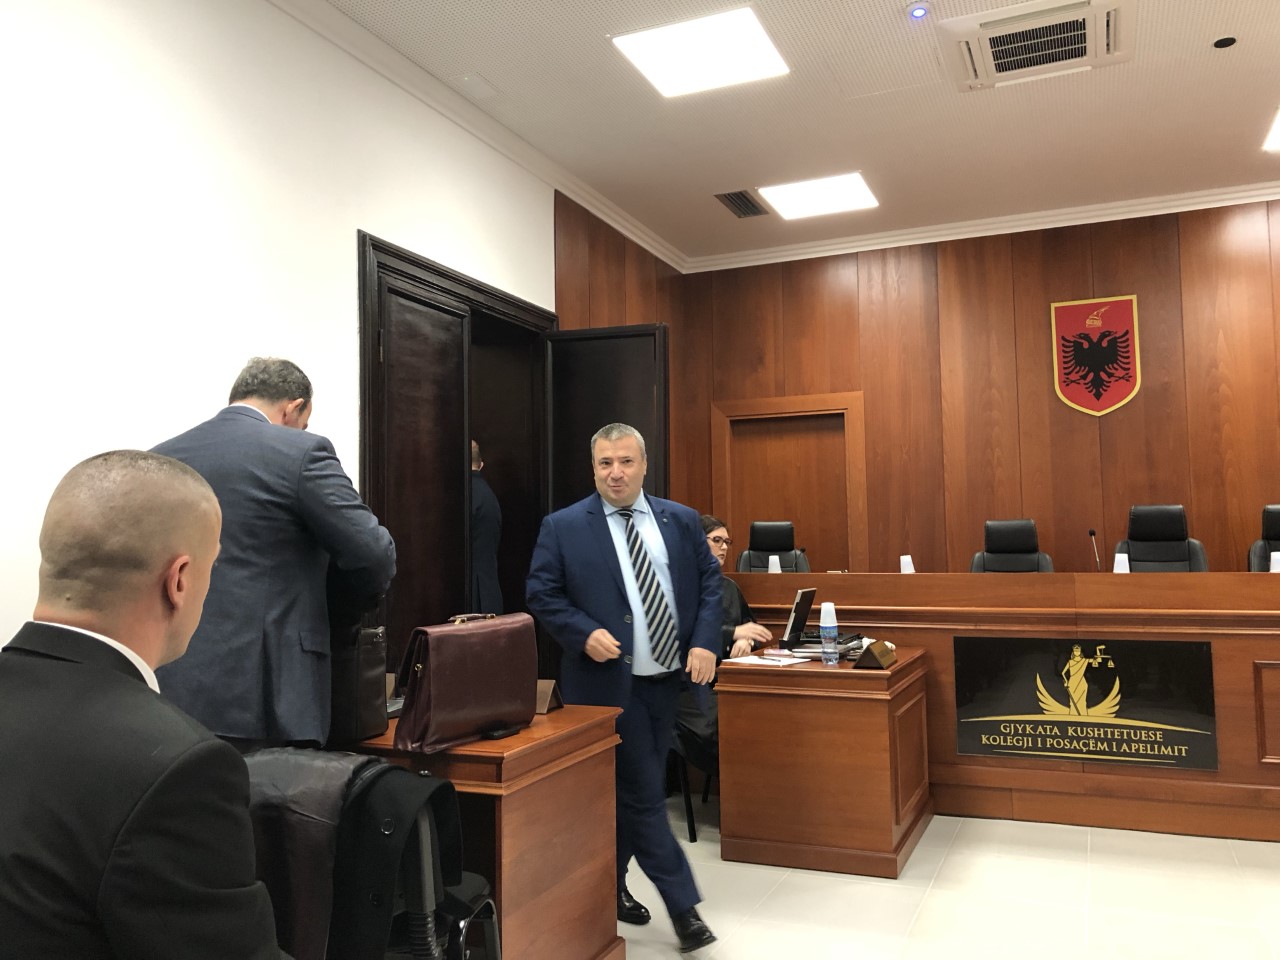 Seanca në Kolegj, gjyqtari Artan Lazaj ankohet për njëanshmëri të KPK-së